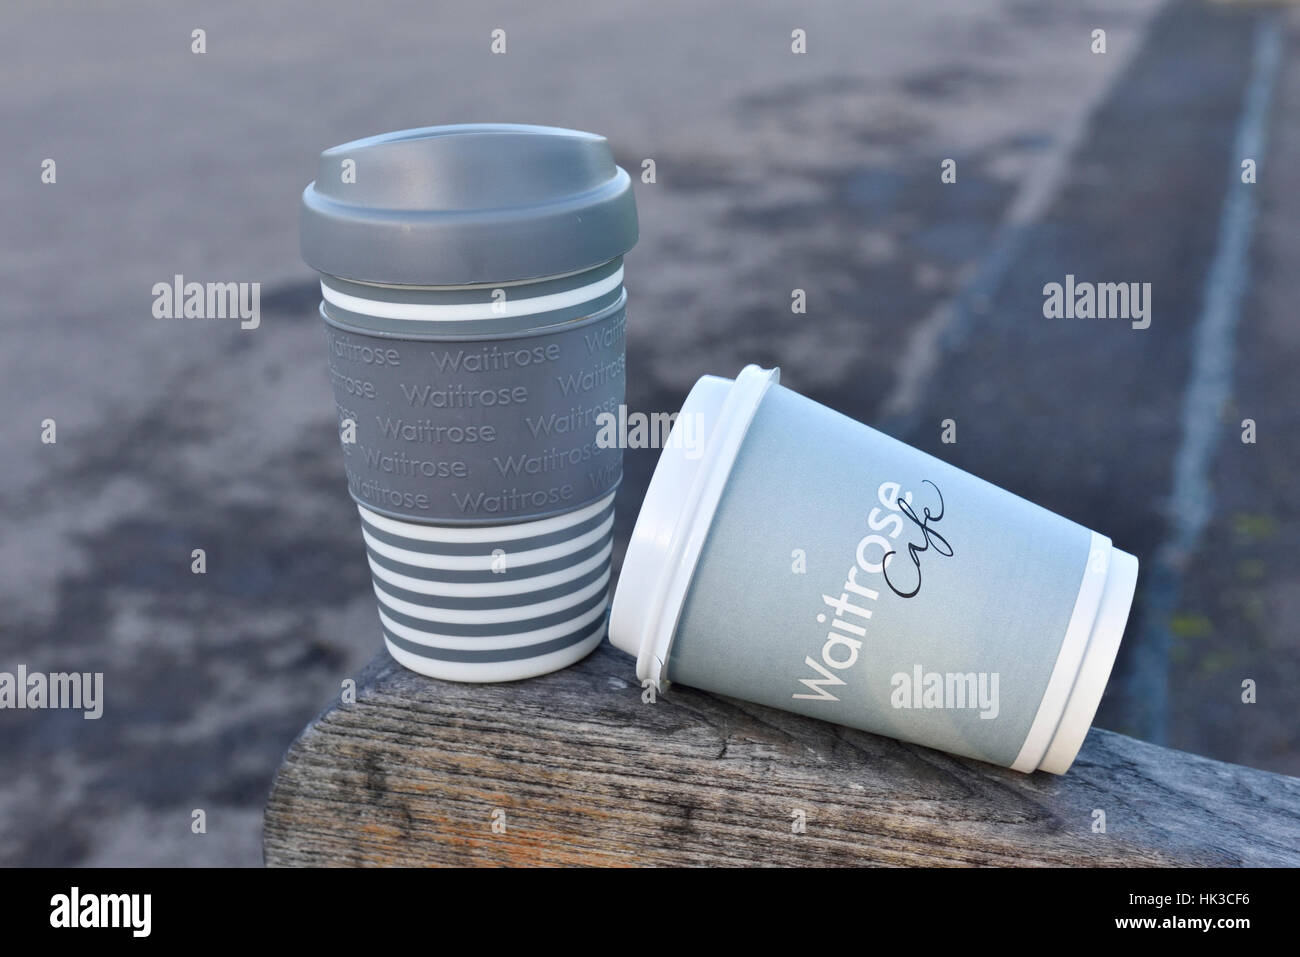 Waitrose emporter jetables et réutilisables tasses à café ou travell mug sur banc de parc, dans le centre de Londres, Angleterre, RU Banque D'Images